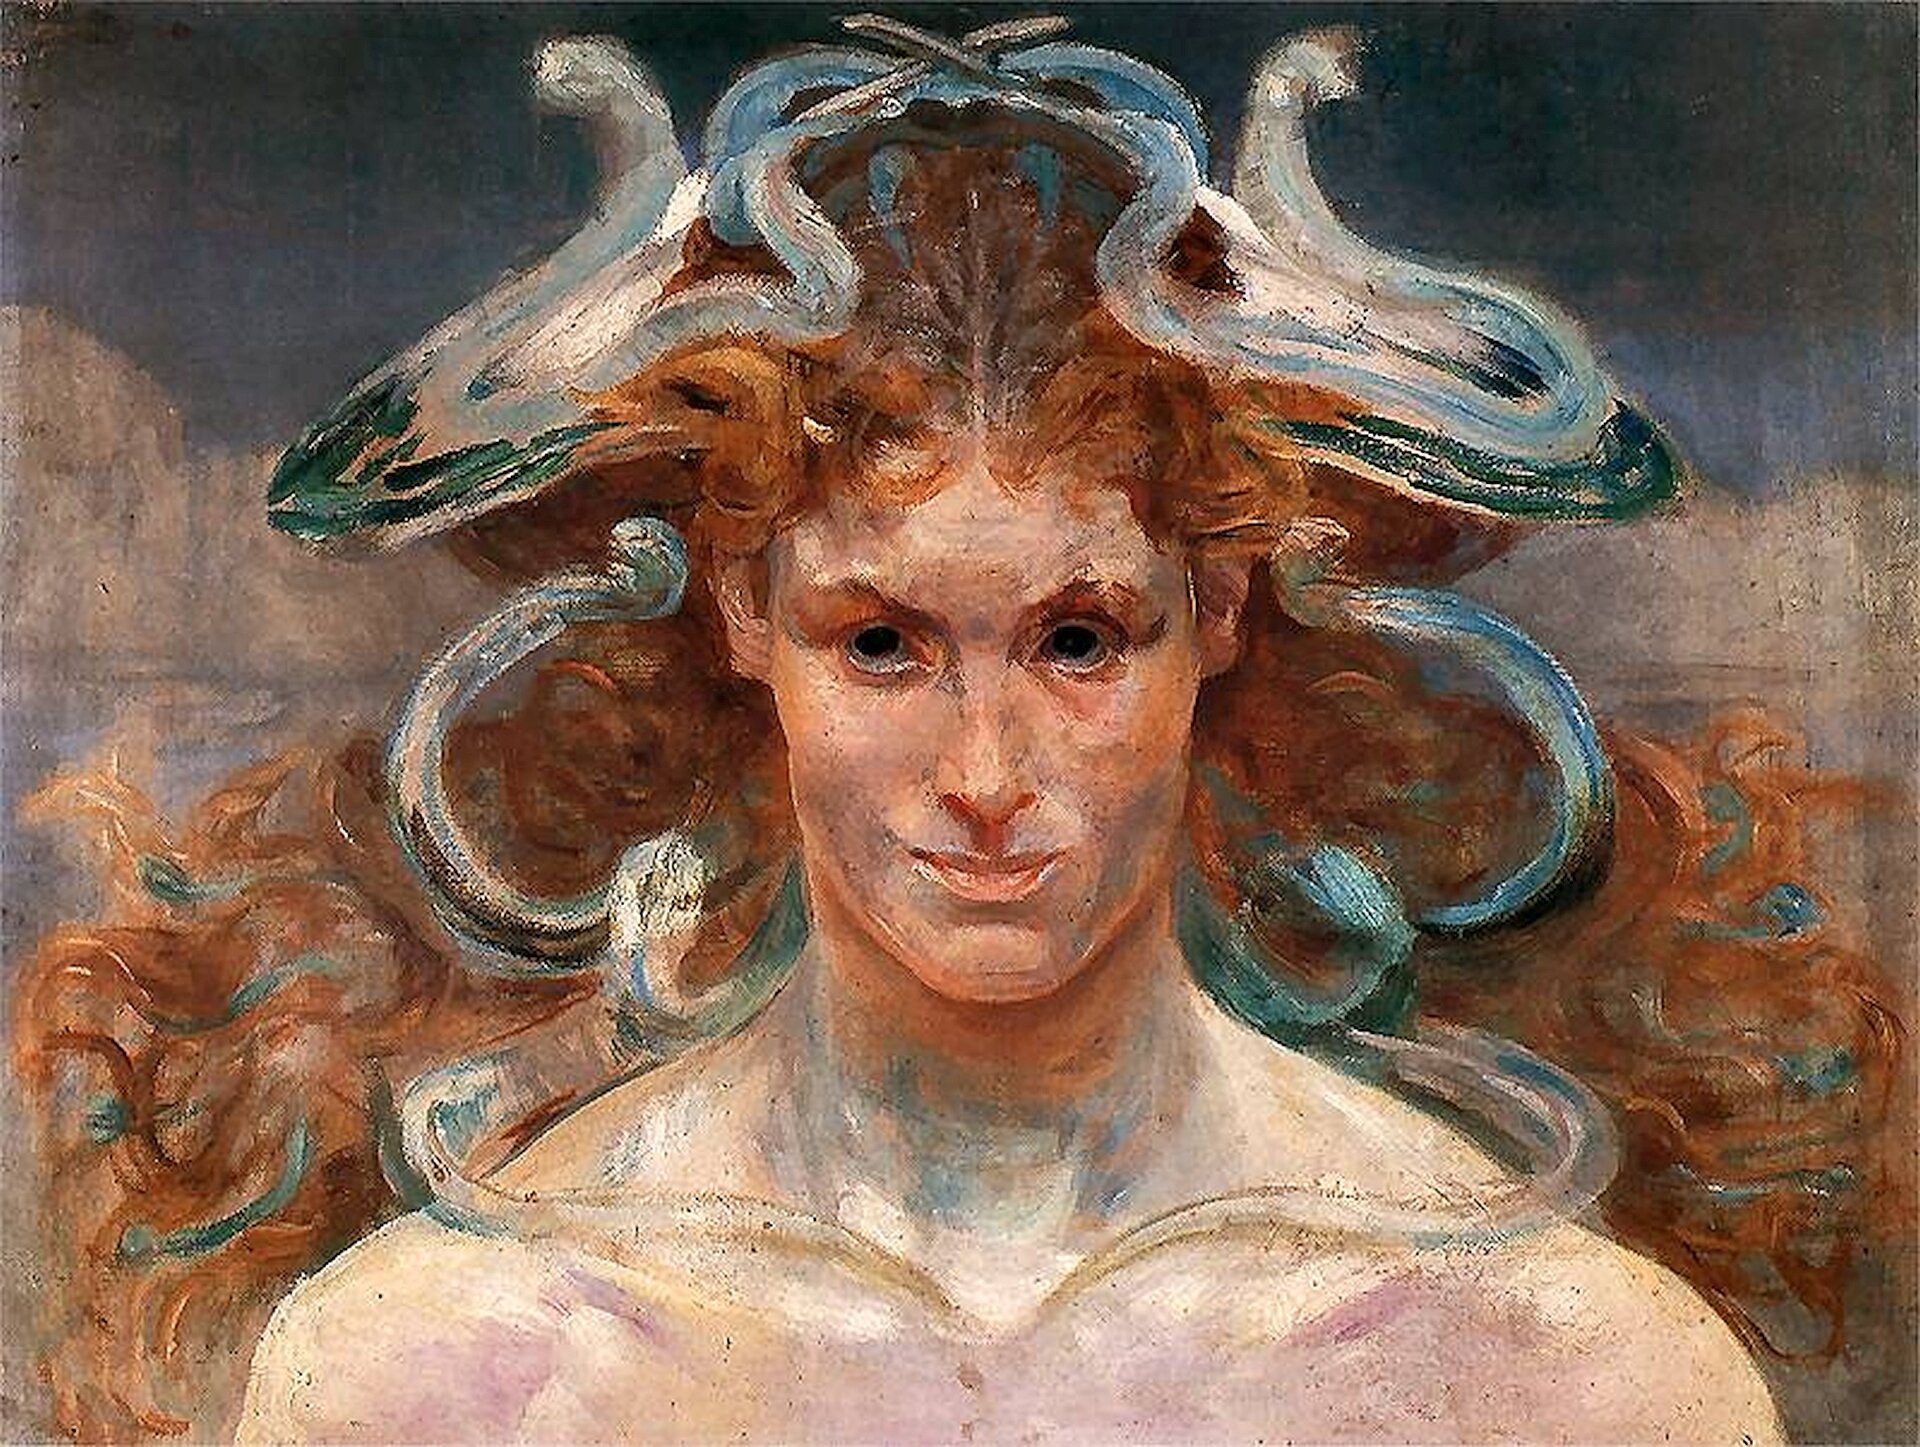 Ilustracja przedstawia obraz Jacka Malczewskiego pod tytułem „Meduza”. Ilustracja przedstawia rudowłosą kobietę, o długich włosach i męskim wyrazie twarzy. Z jej włosów wydobywają się węże. Kobieta jest przedstawiona tylko do piersi.